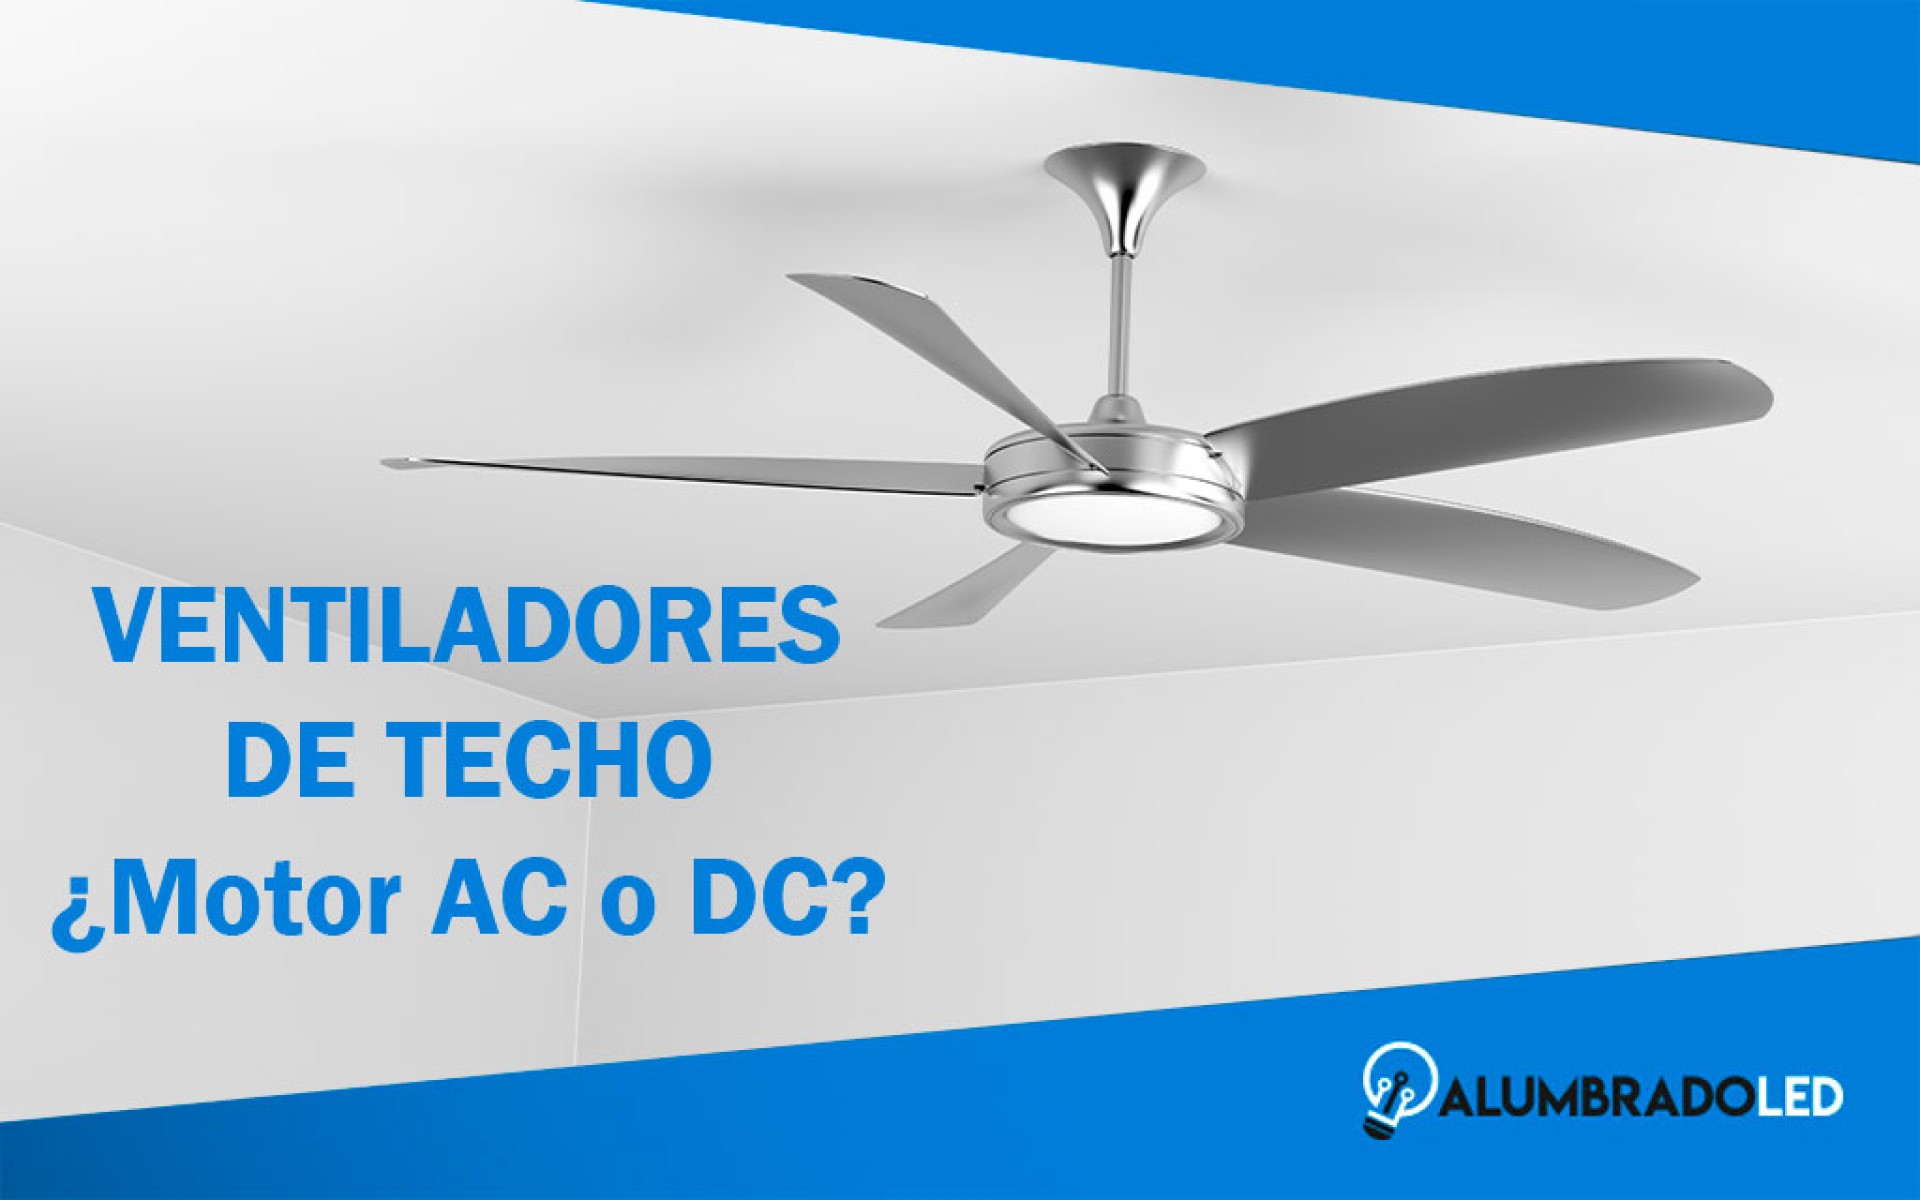 Ventiladores con motor AC o DC: ¿Cuál es la diferencia? ¿Cuál es mejor?